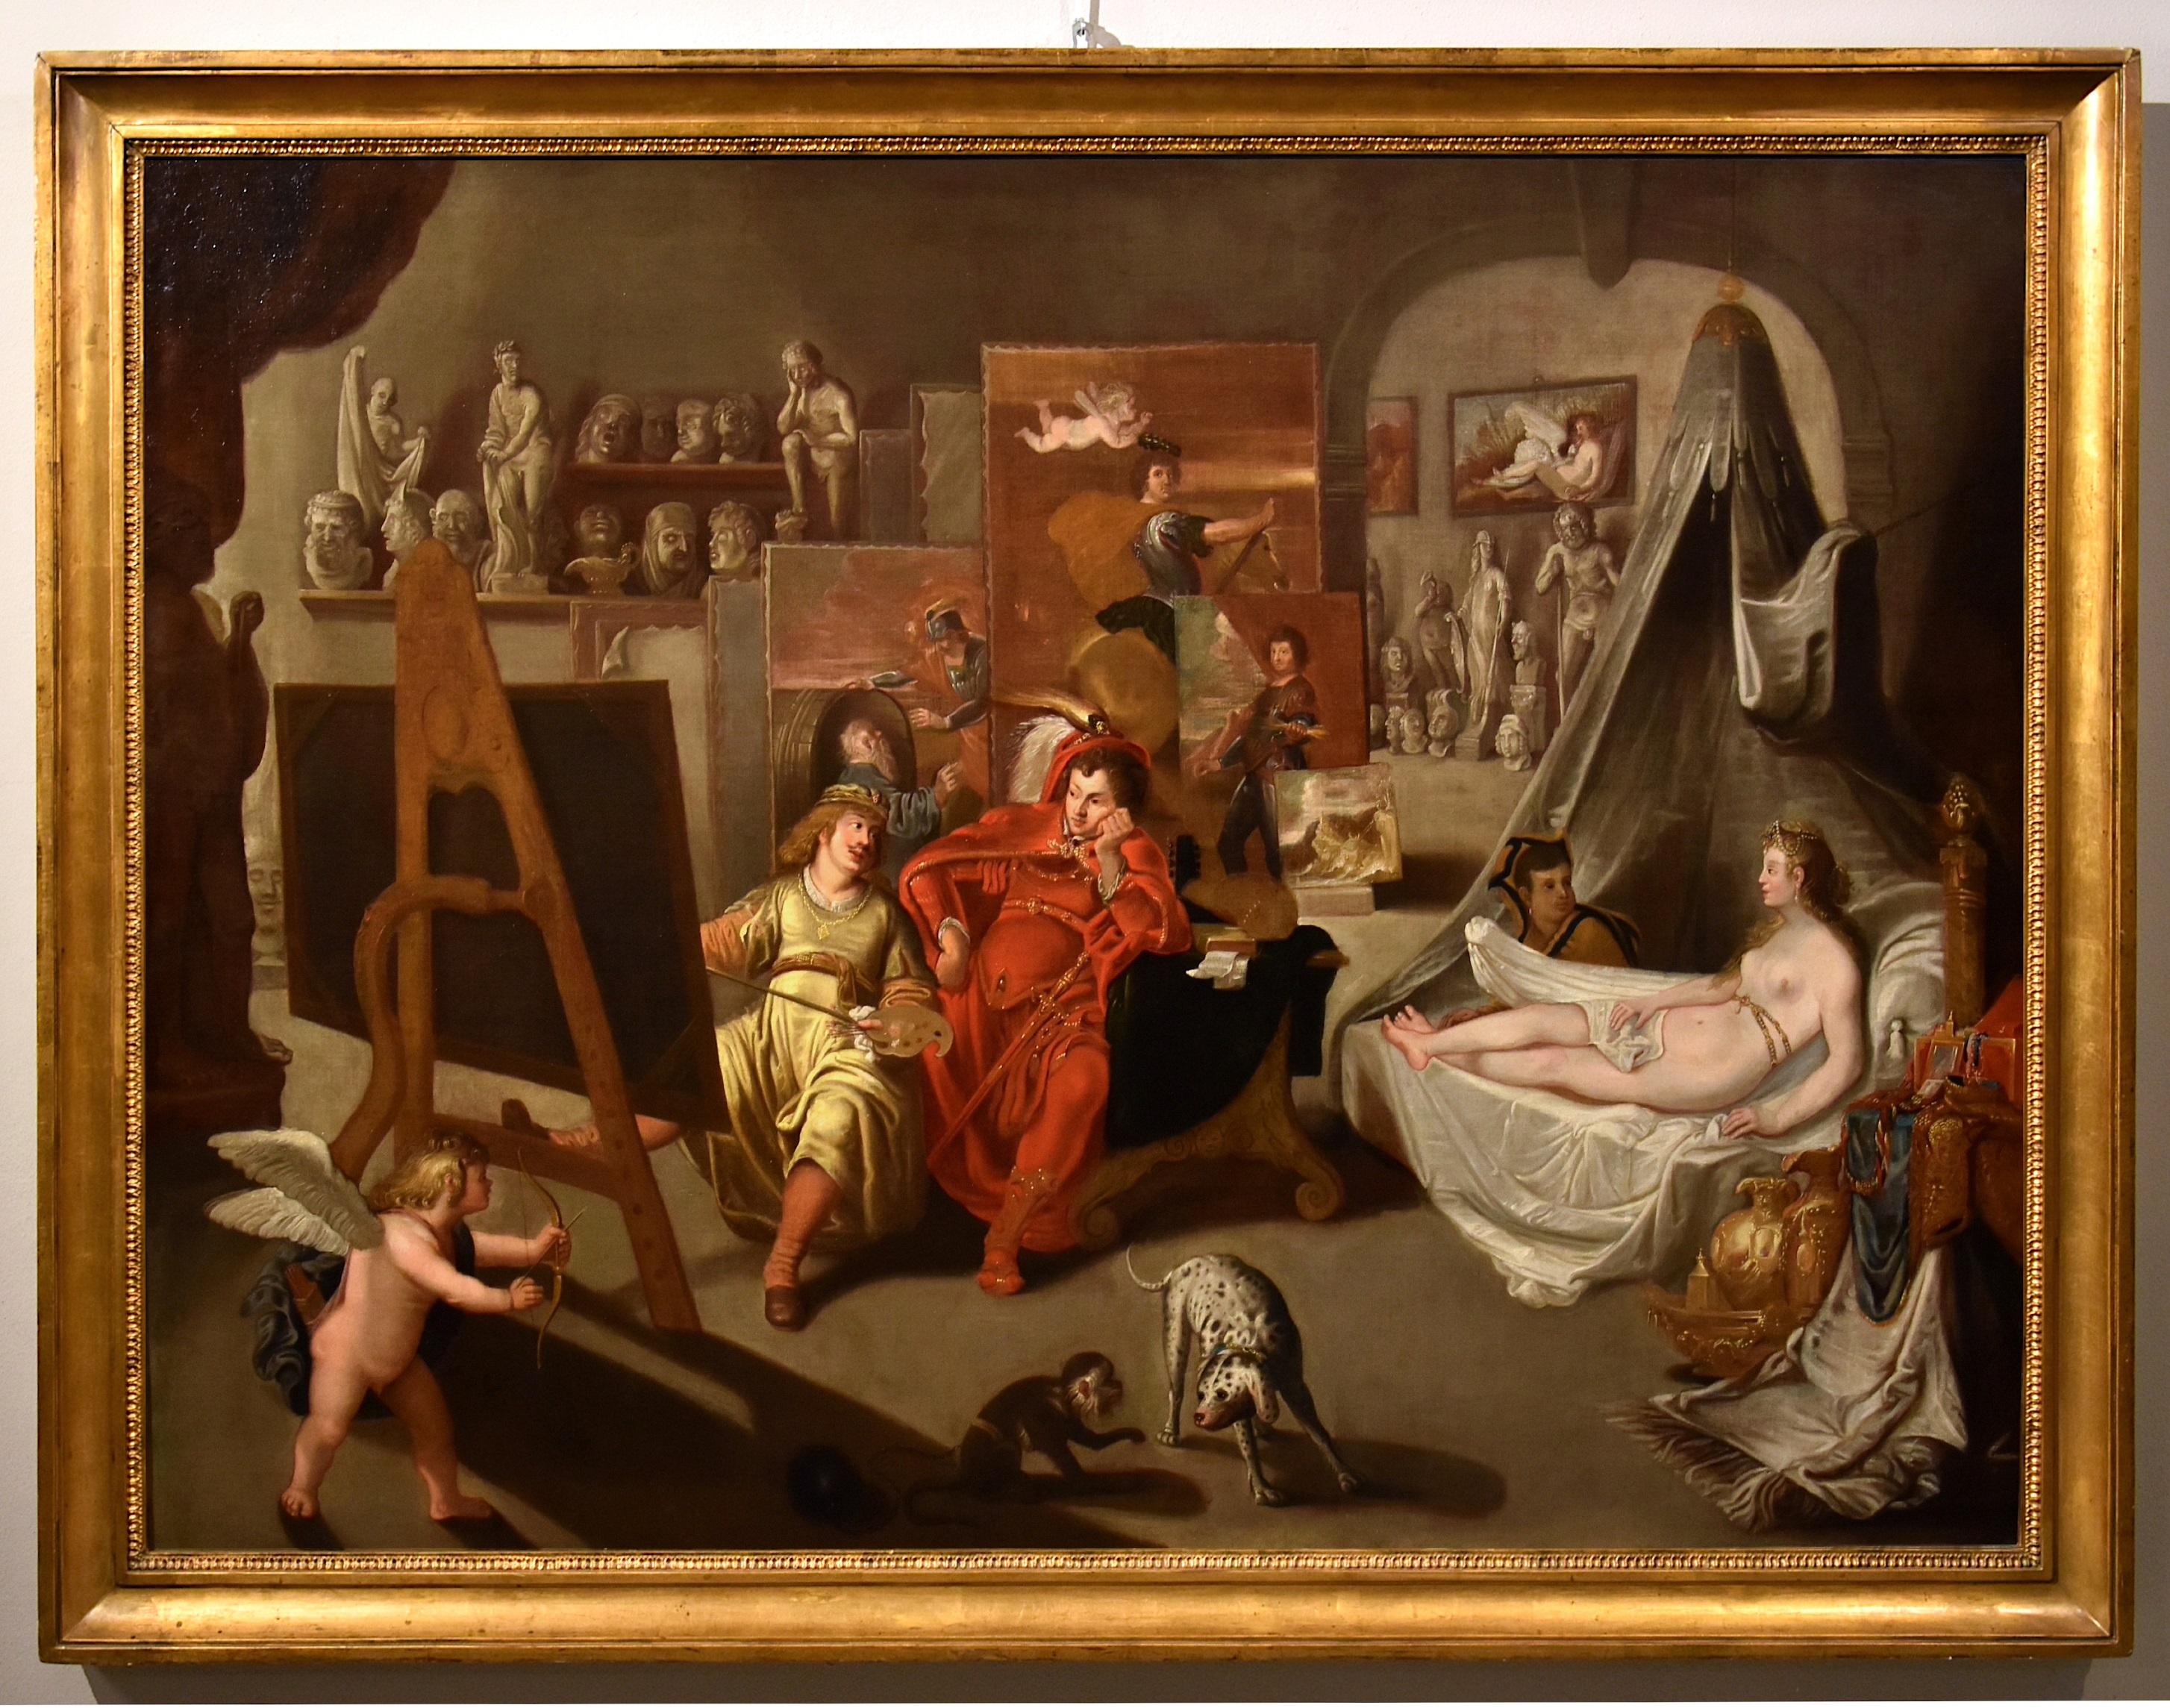 Van Den Bossche Alexander The Great Gemälde Öl auf Leinwand 17/18. Jahrhundert Flämisch  – Painting von Balthasar Van Den Bossche (Antwerp, 1681 - 1715)